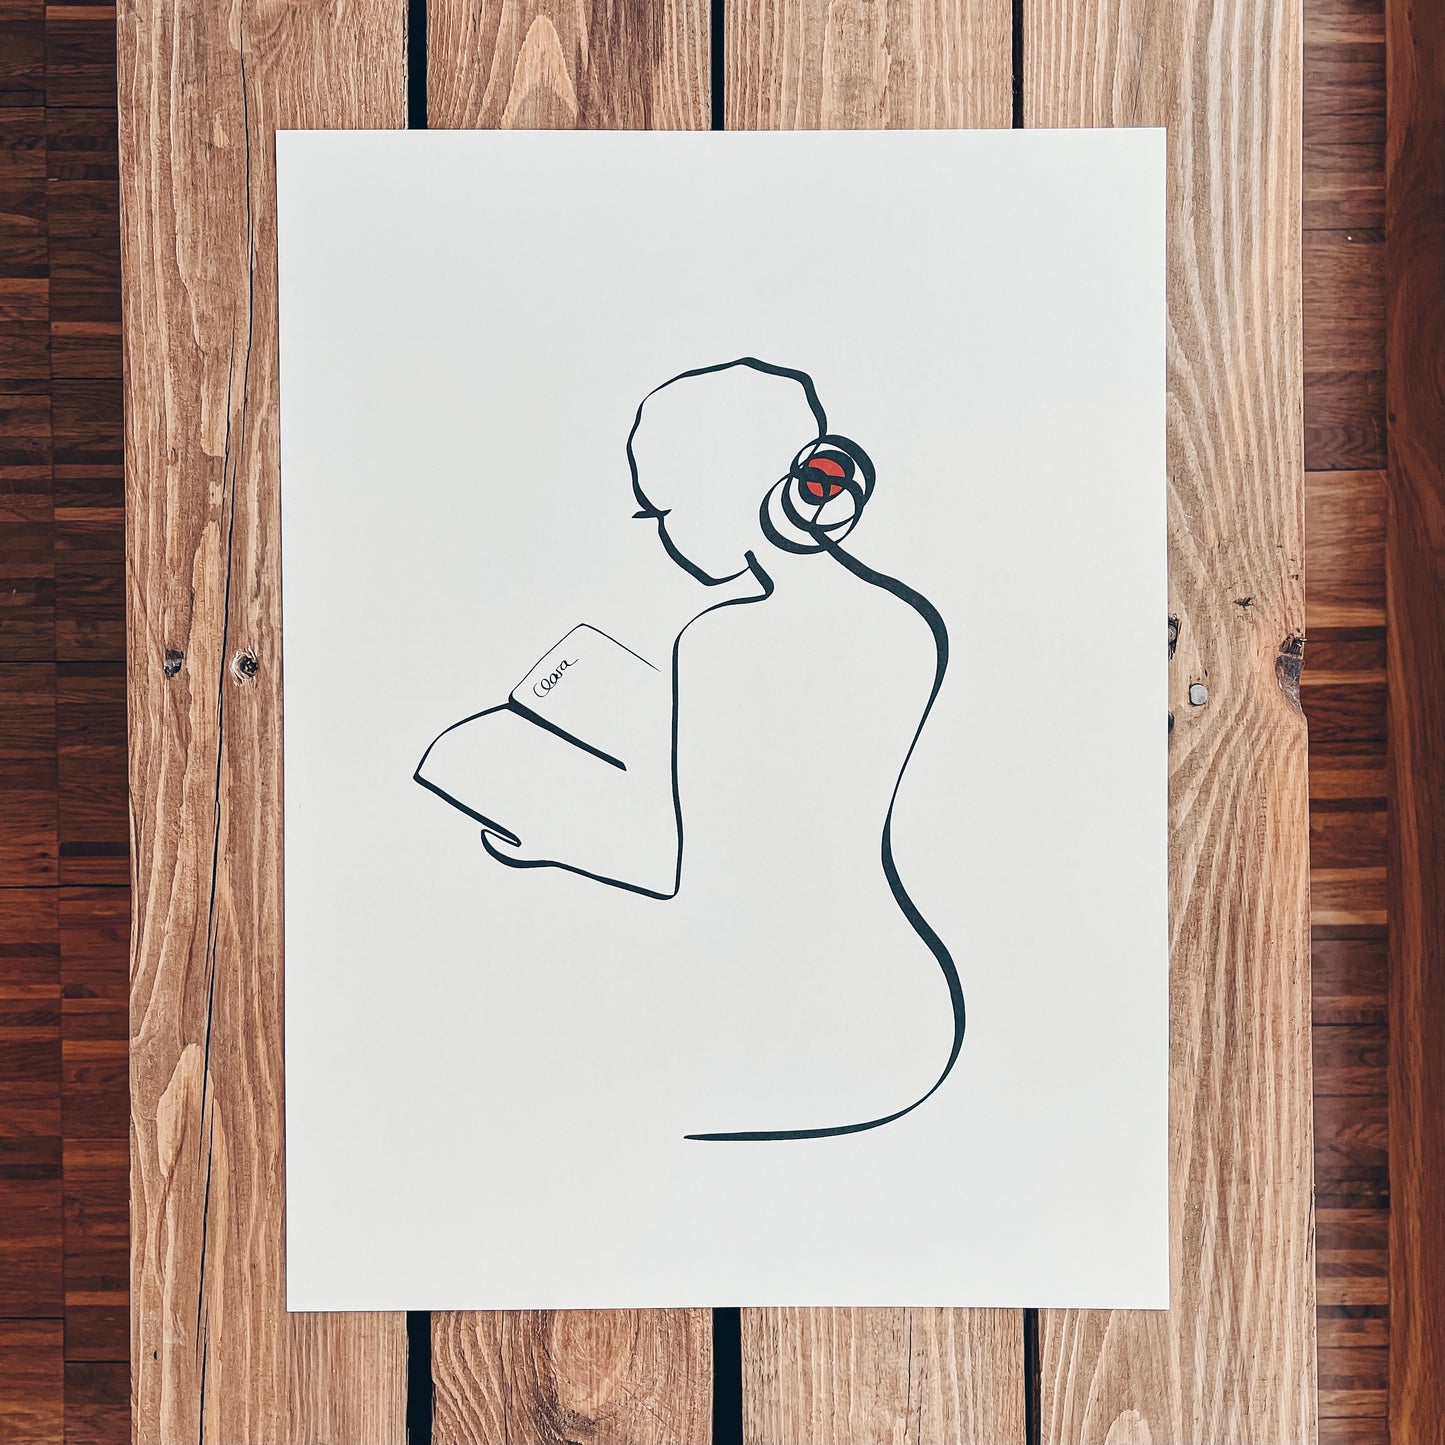 Frauen und Bücher Nr. 4-Kunstdruck-JUDITH CLARA-30x40 cm *Limited* (creme weiß) Papier 300g-one-line-art